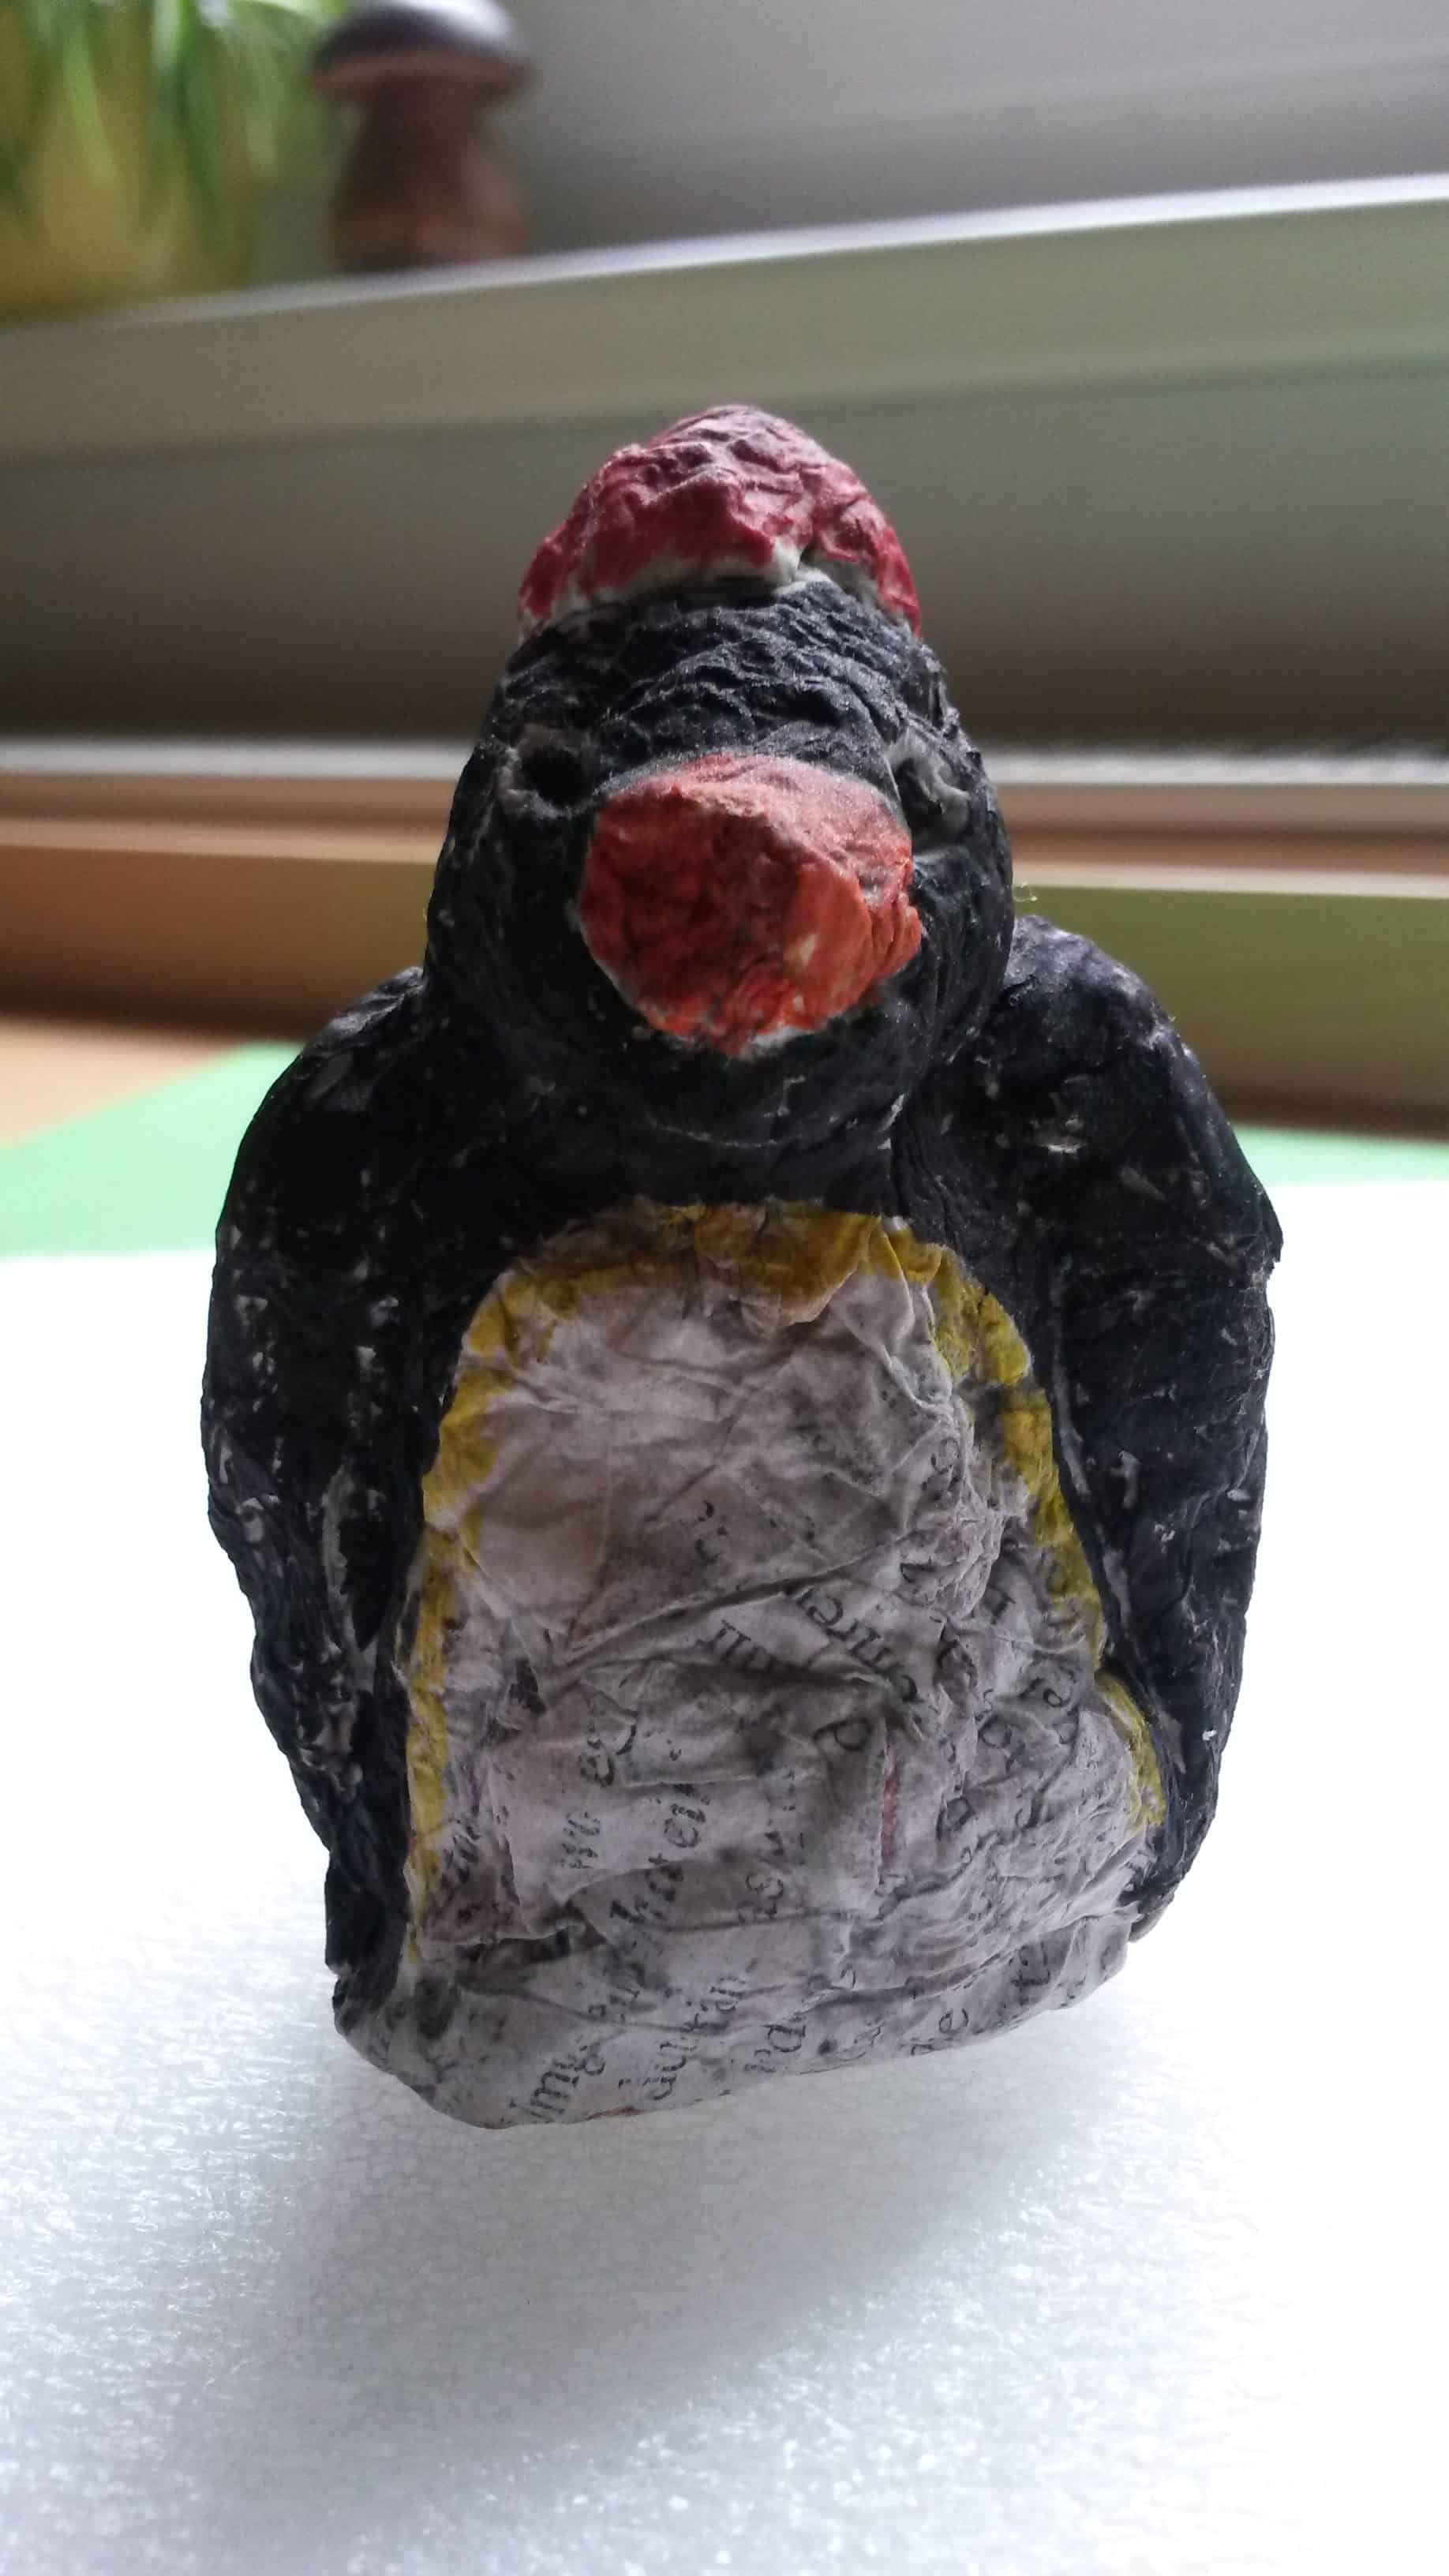 Pinguin aus Pappmachè